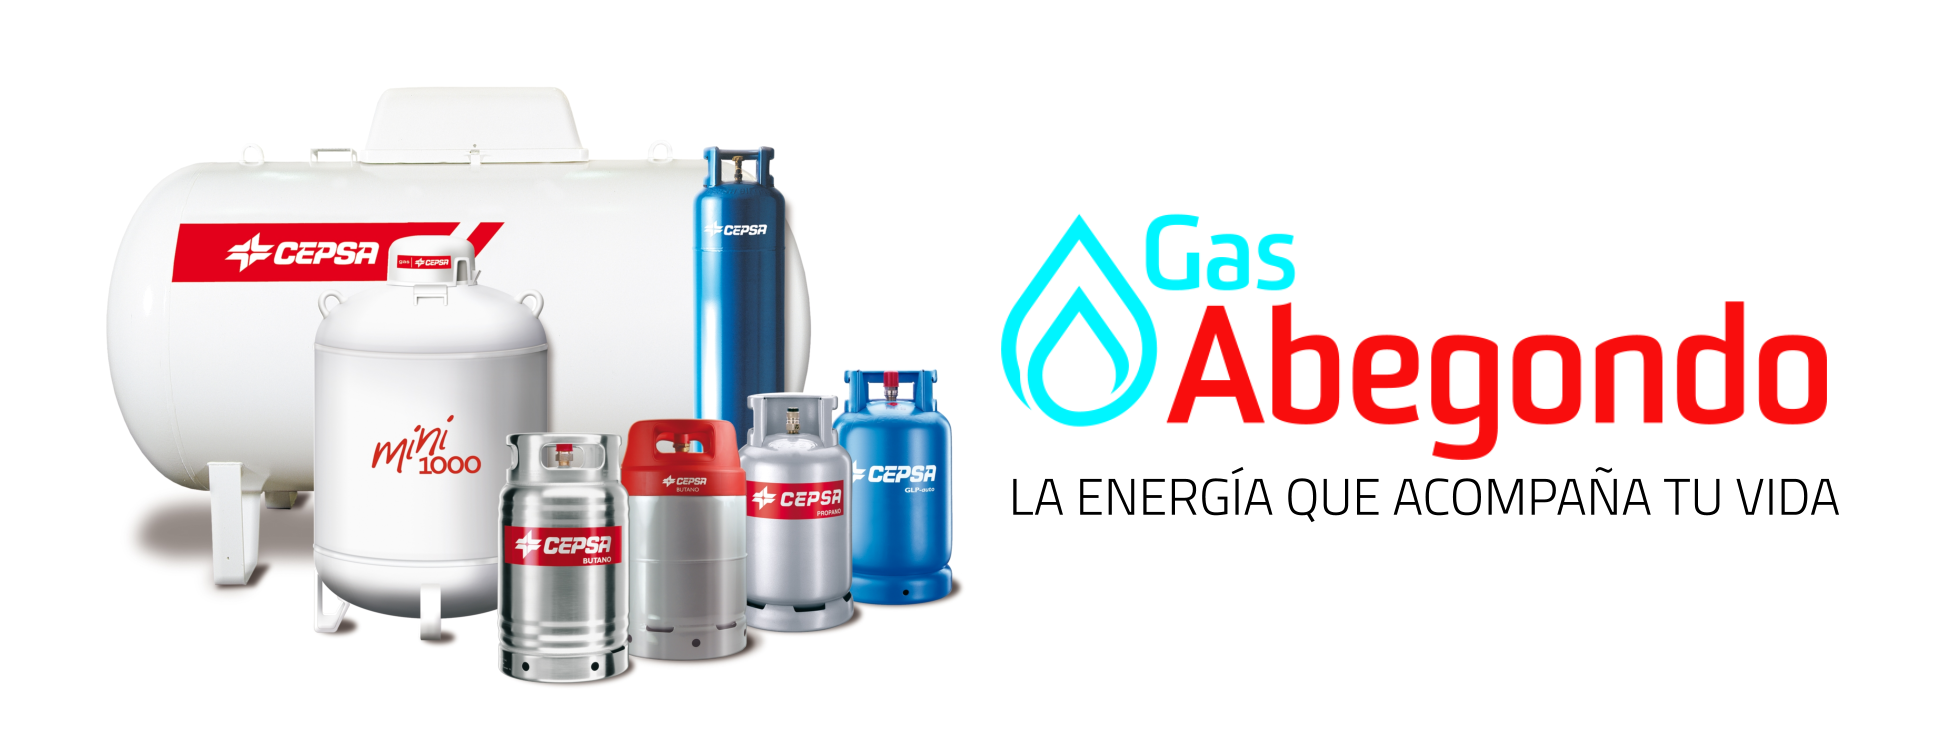 Gas Abegondo - La energía que acompaña tu vida